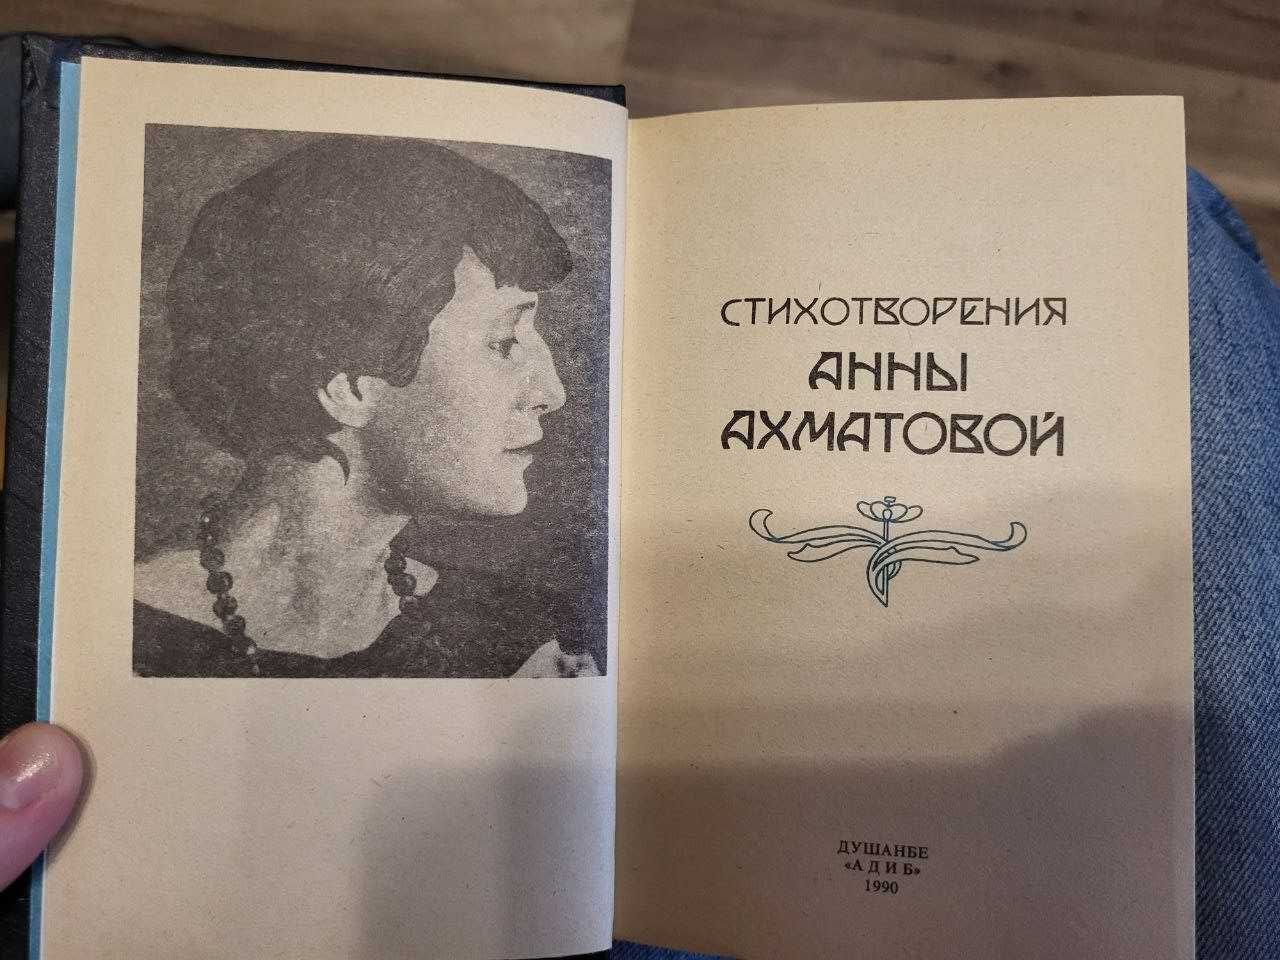 Сборник стихотворений Анны Ахматовой